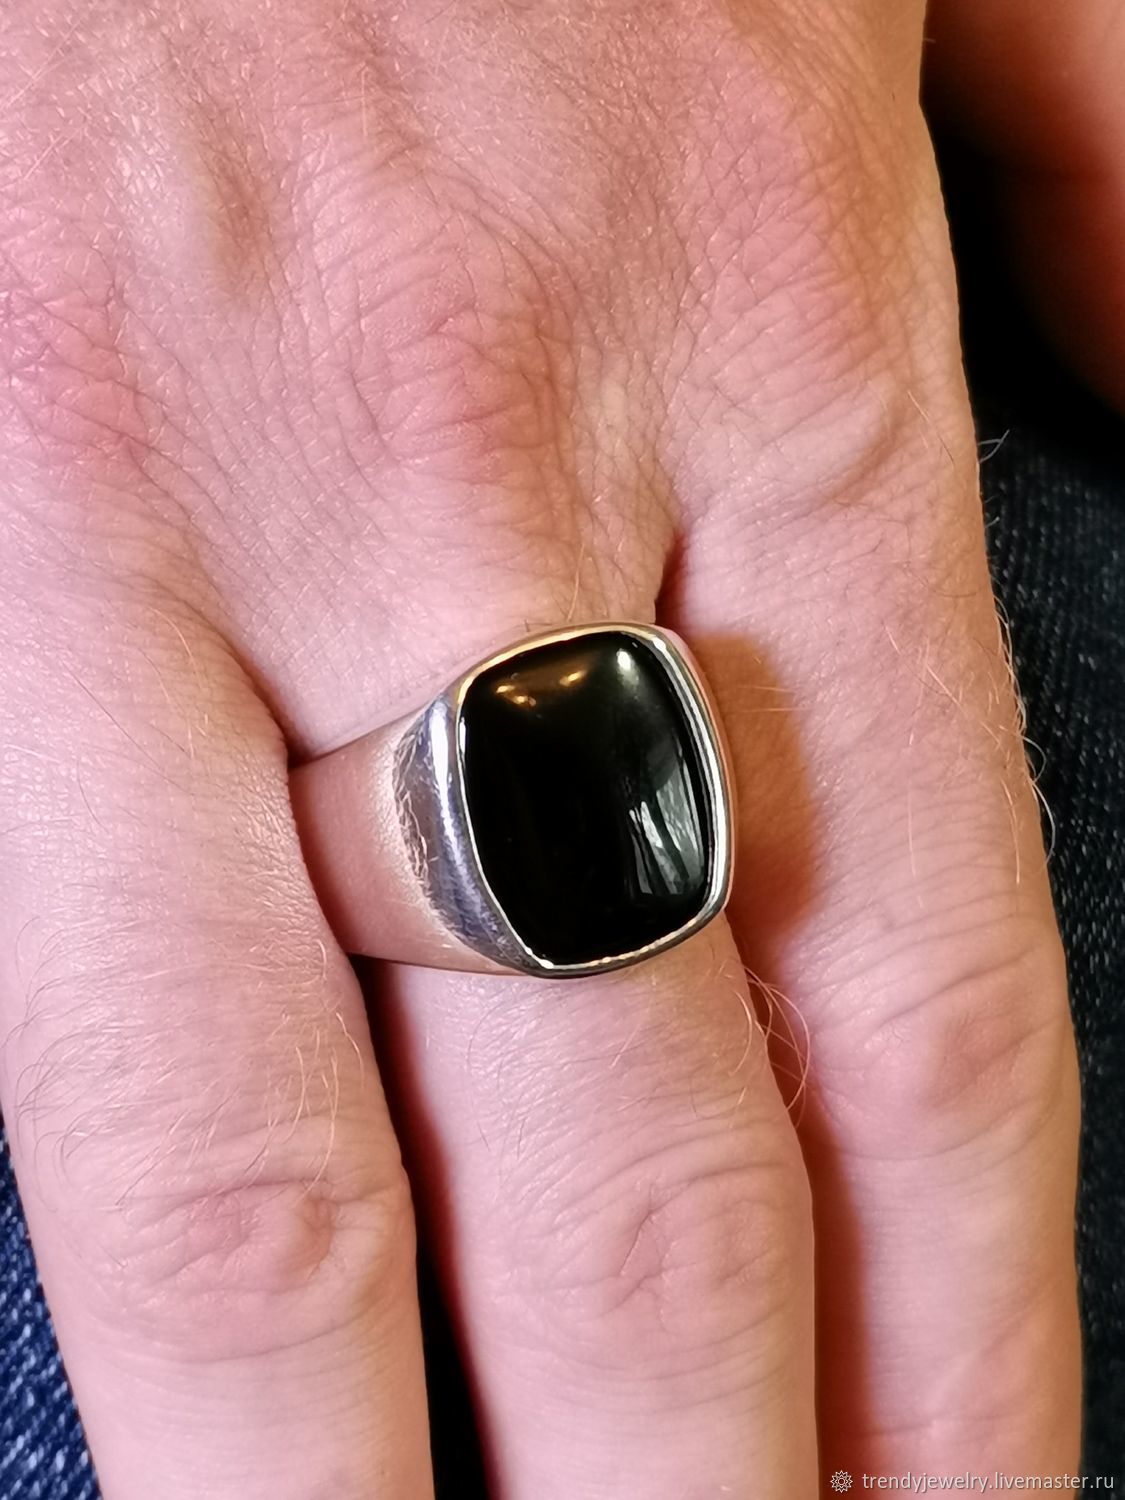 Агат серебряное кольцо перстень для мужчины с черным камнем br 314.21